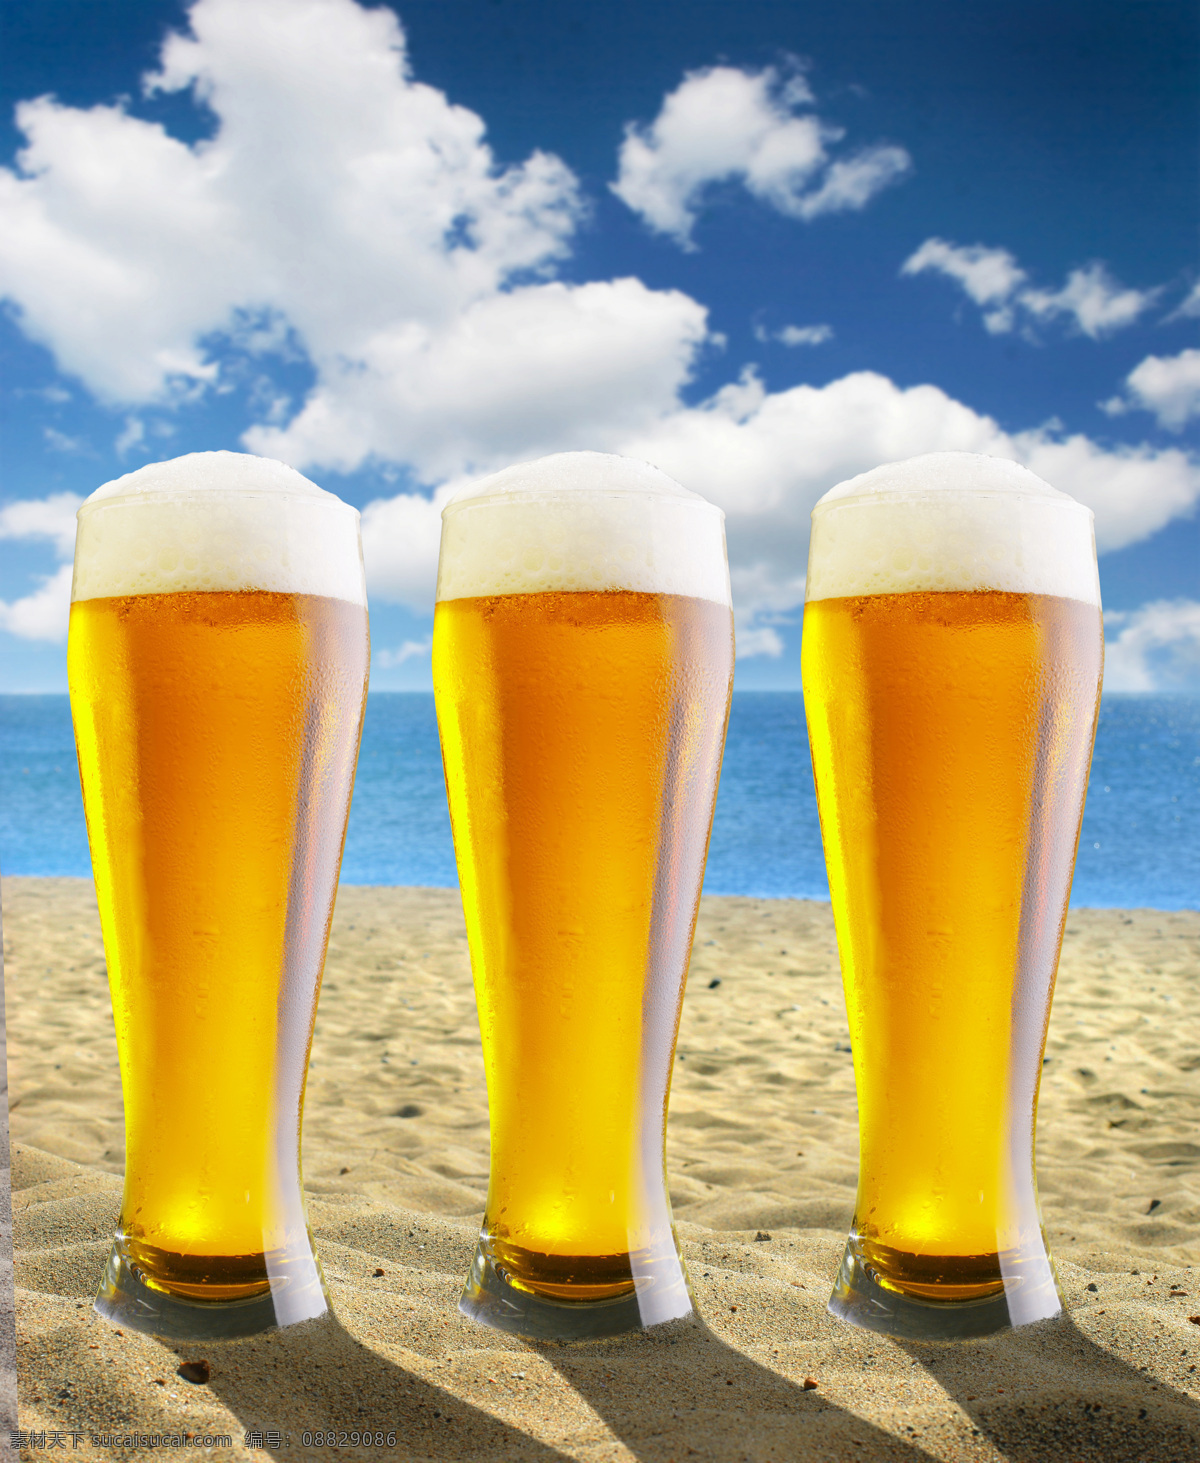 酒杯 里 啤酒 饮料 酒类 啤酒杯 气泡 沙漠 天空 酒类图片 餐饮美食